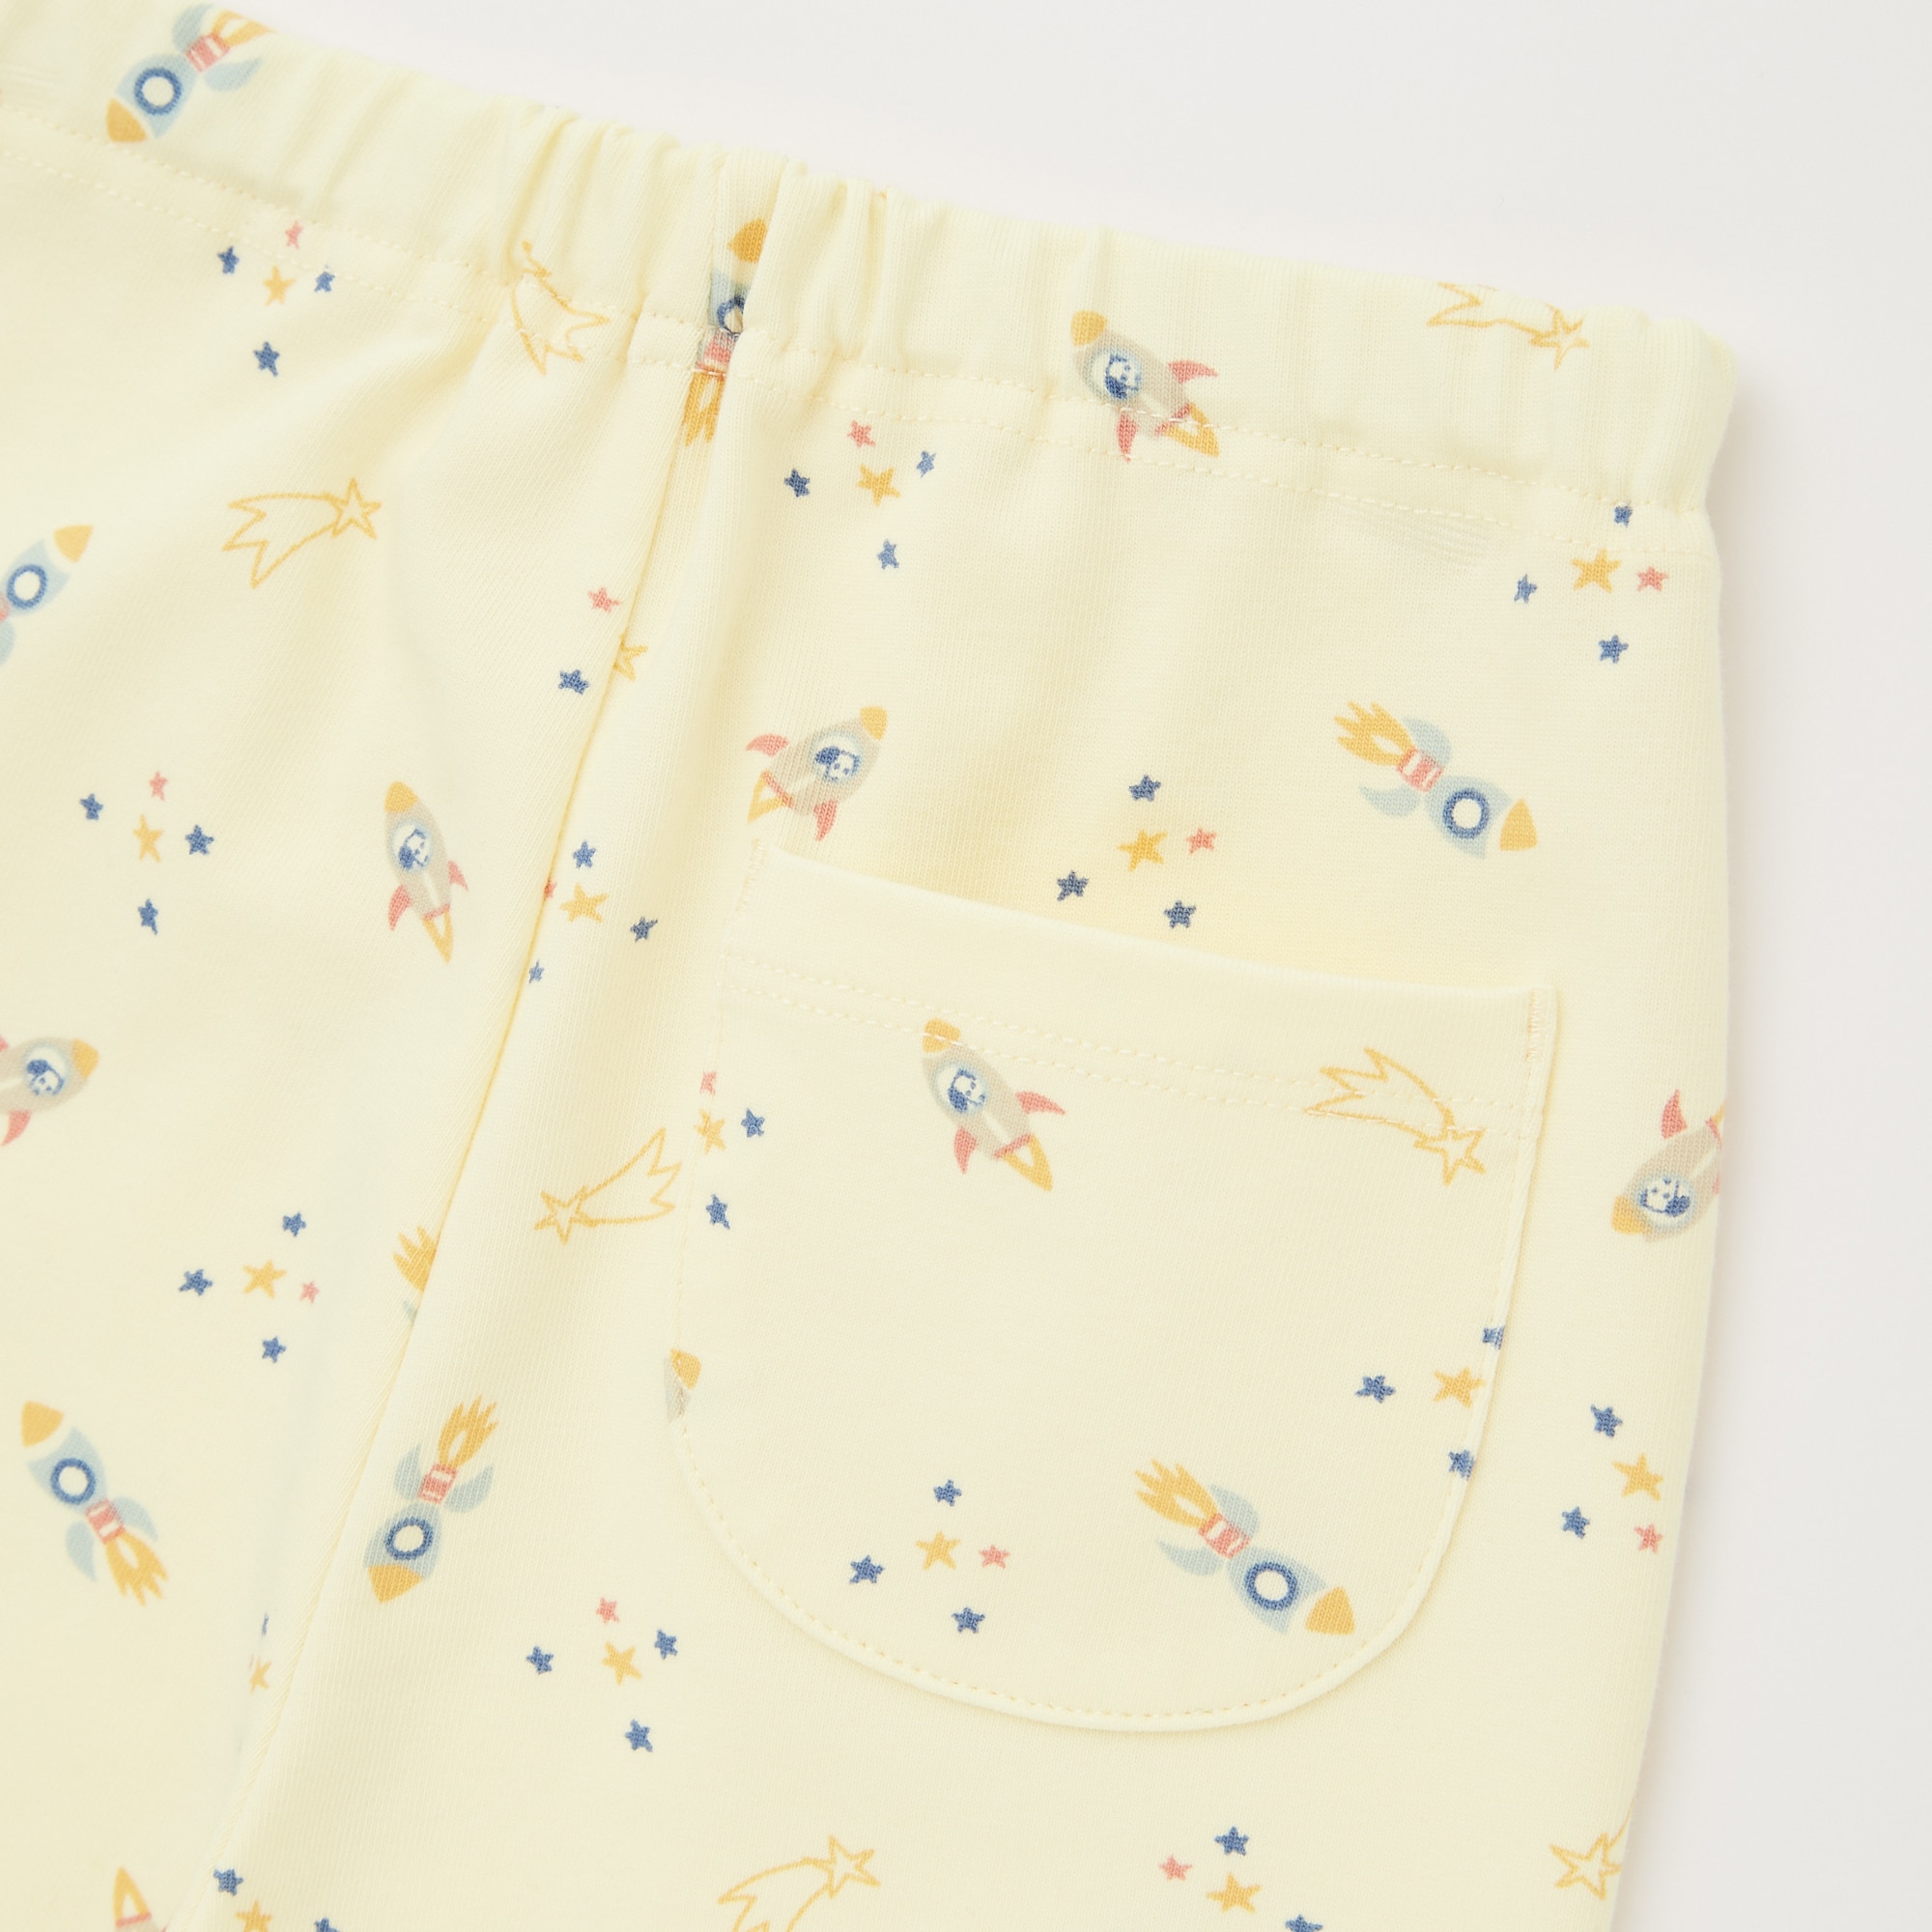 Bộ quần áo ngủ lụa Pijama Uniqlo hàng Nhật Bản chính hãng  Shop Nhất   Shopnhatvn